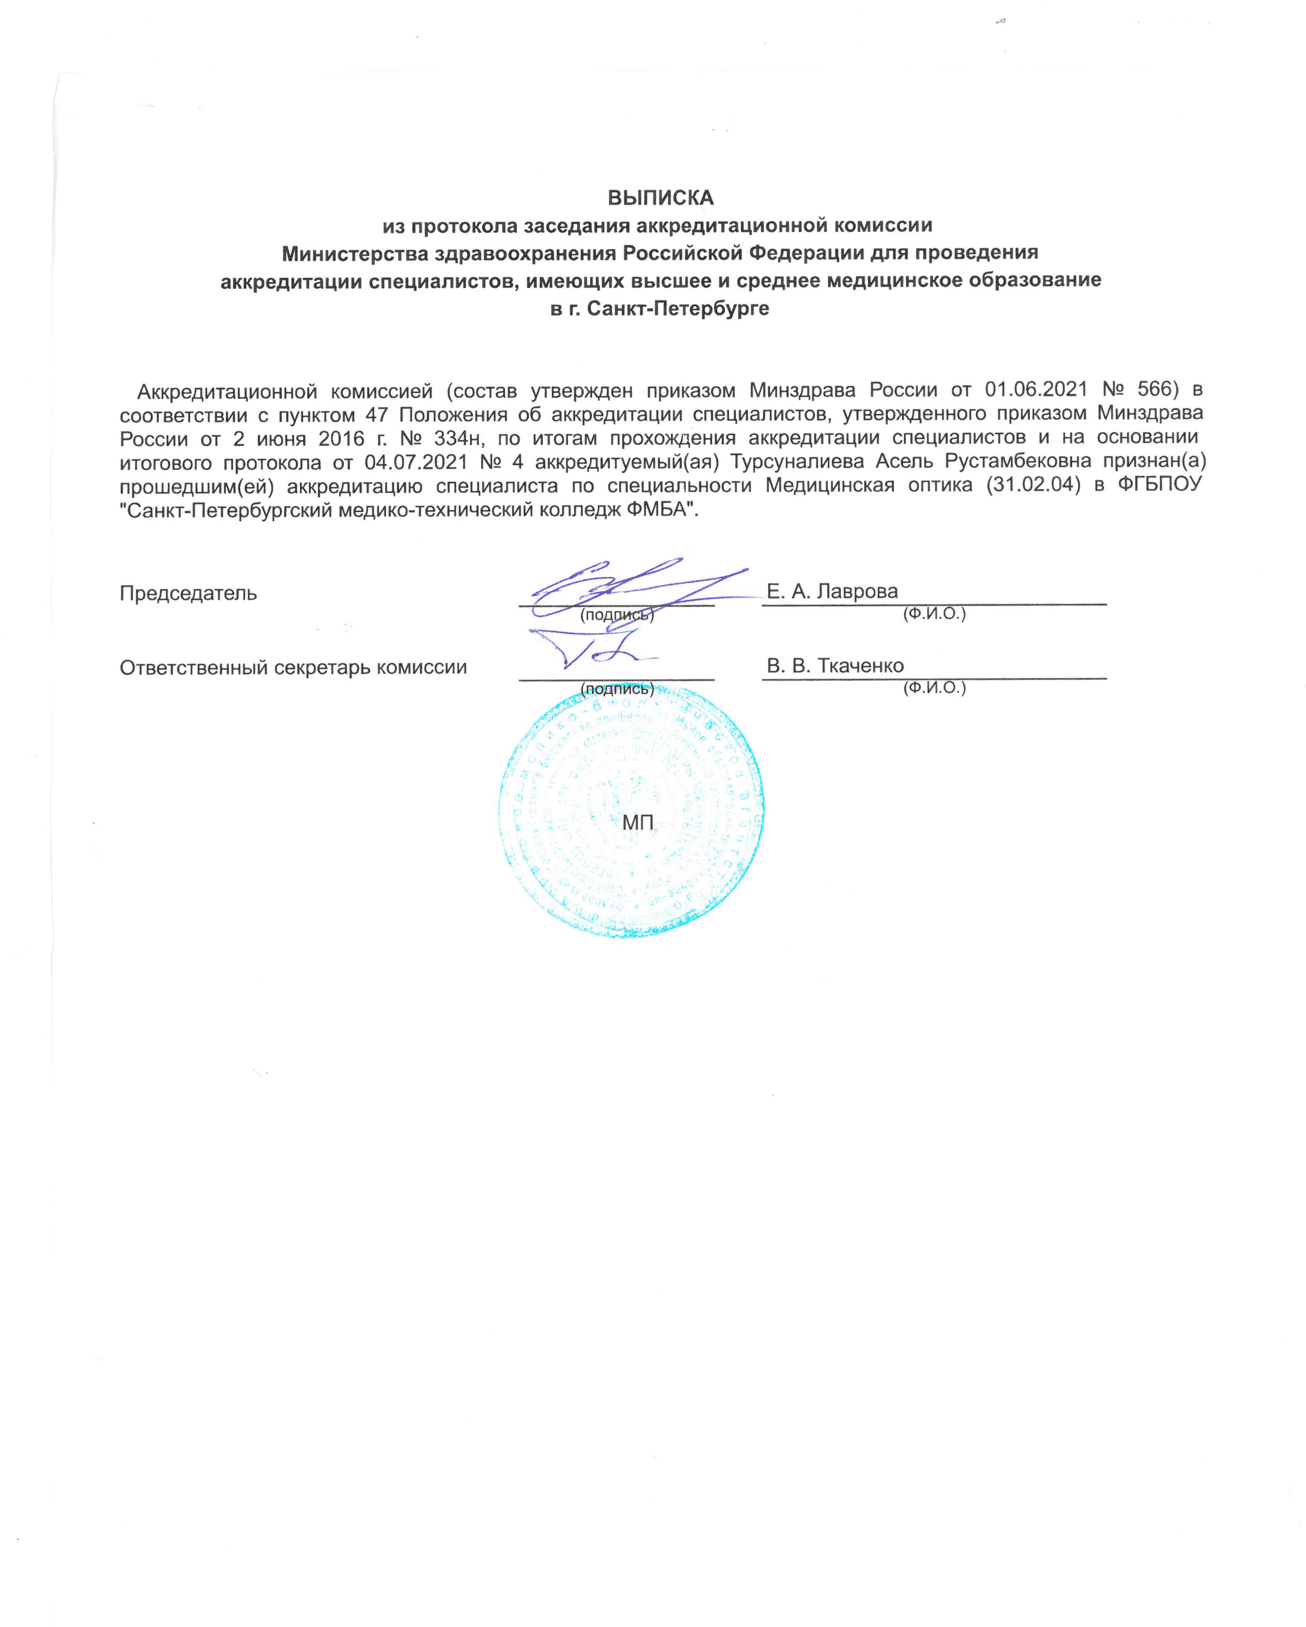 Диплом и сертификат  Турсуналиева Асель Рустамбековна